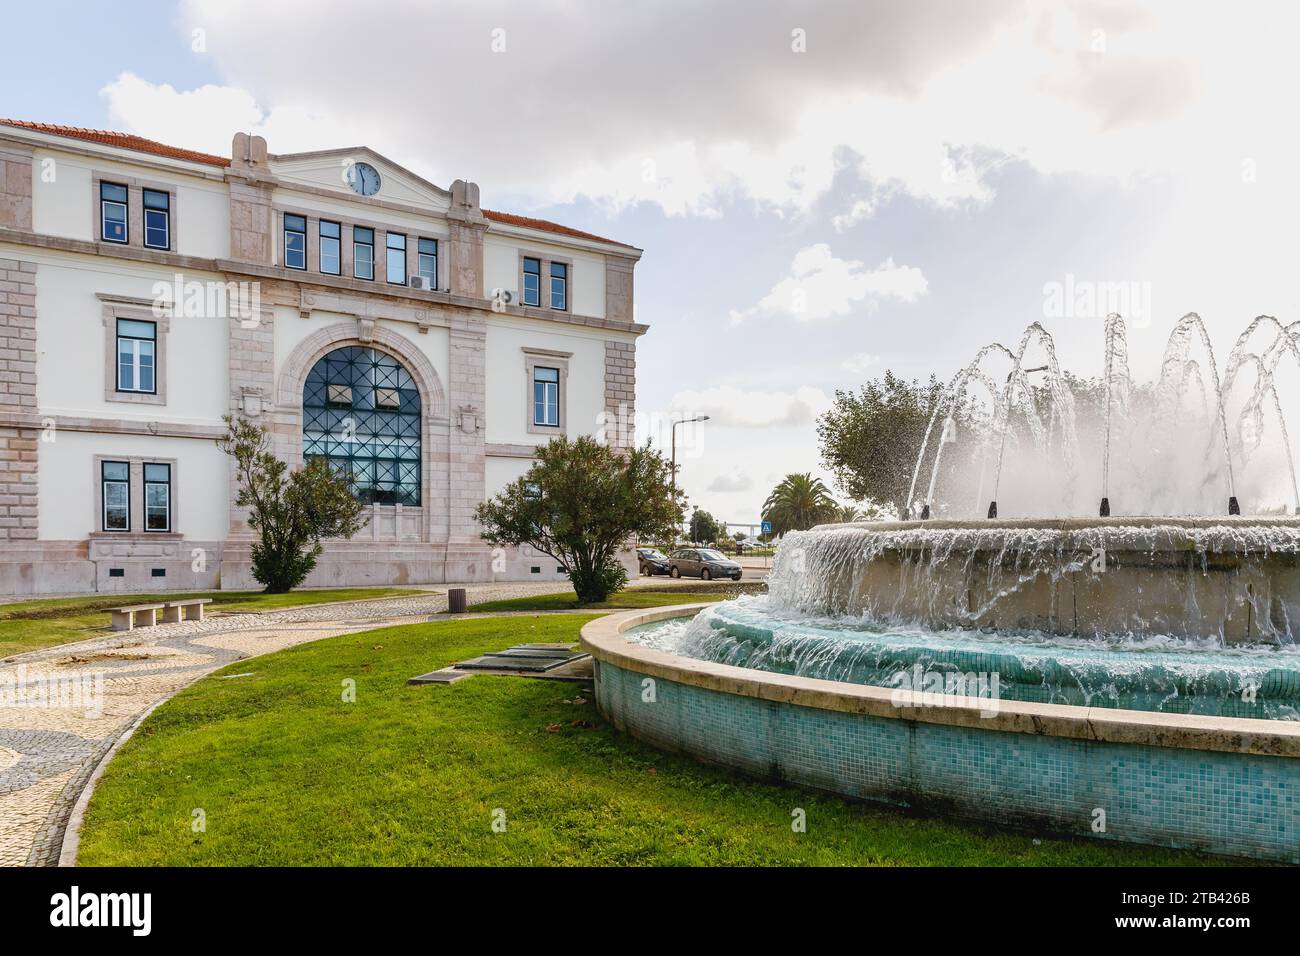 Figueira da Foz, Portogallo - 26 ottobre 2020: Atmosfera di strada e dettagli architettonici del municipio nel centro storico della città in una giornata autunnale Foto Stock